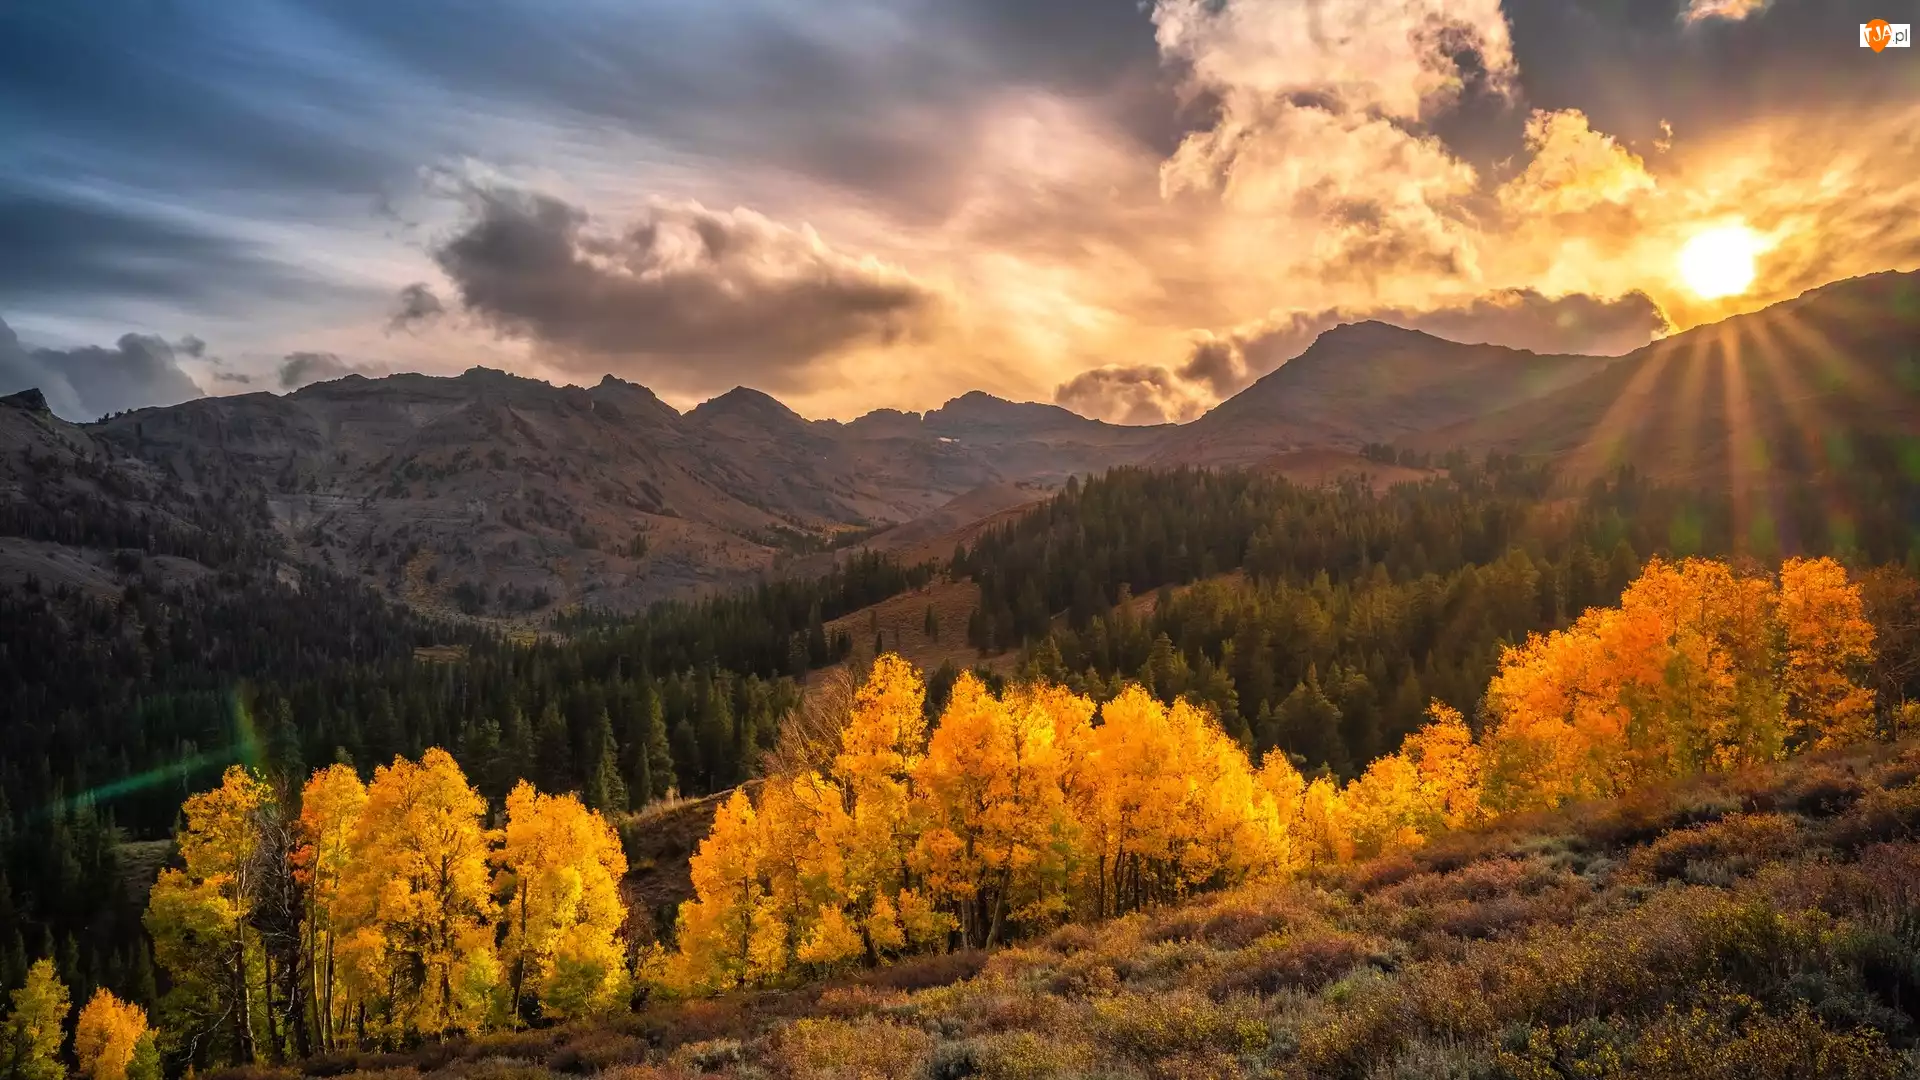 Promienie słońca, Chmury, Drzewa, Góry, Kalifornia, Stany Zjednoczone, Sonora Pass, Region Eastern Sierra, Jesień, Słońce